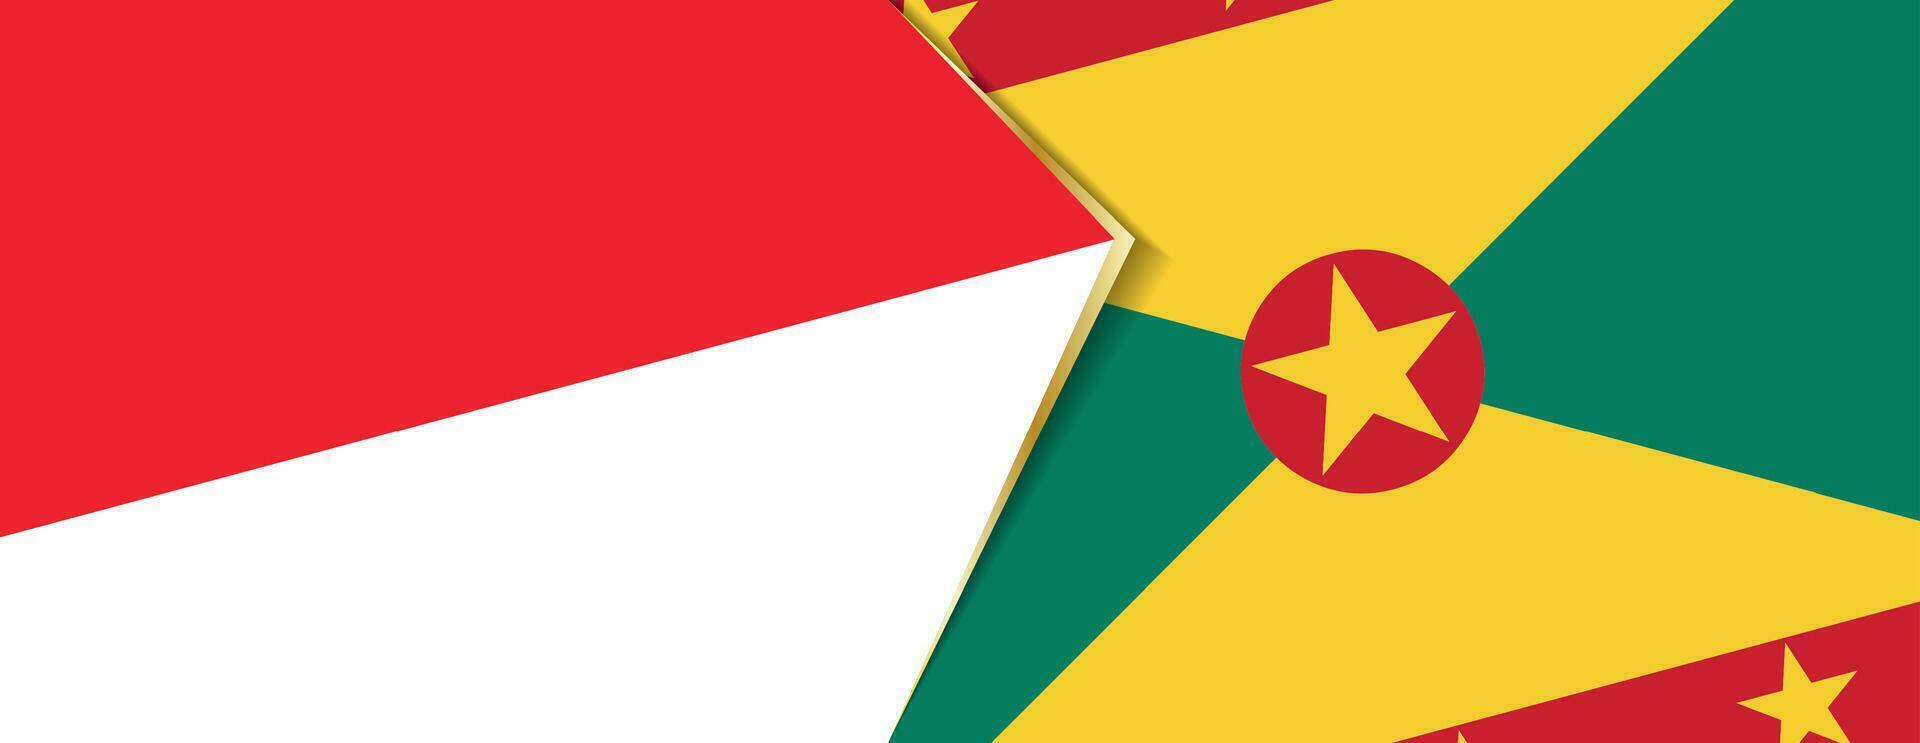 Indonesien und Grenada Flaggen, zwei Vektor Flaggen.